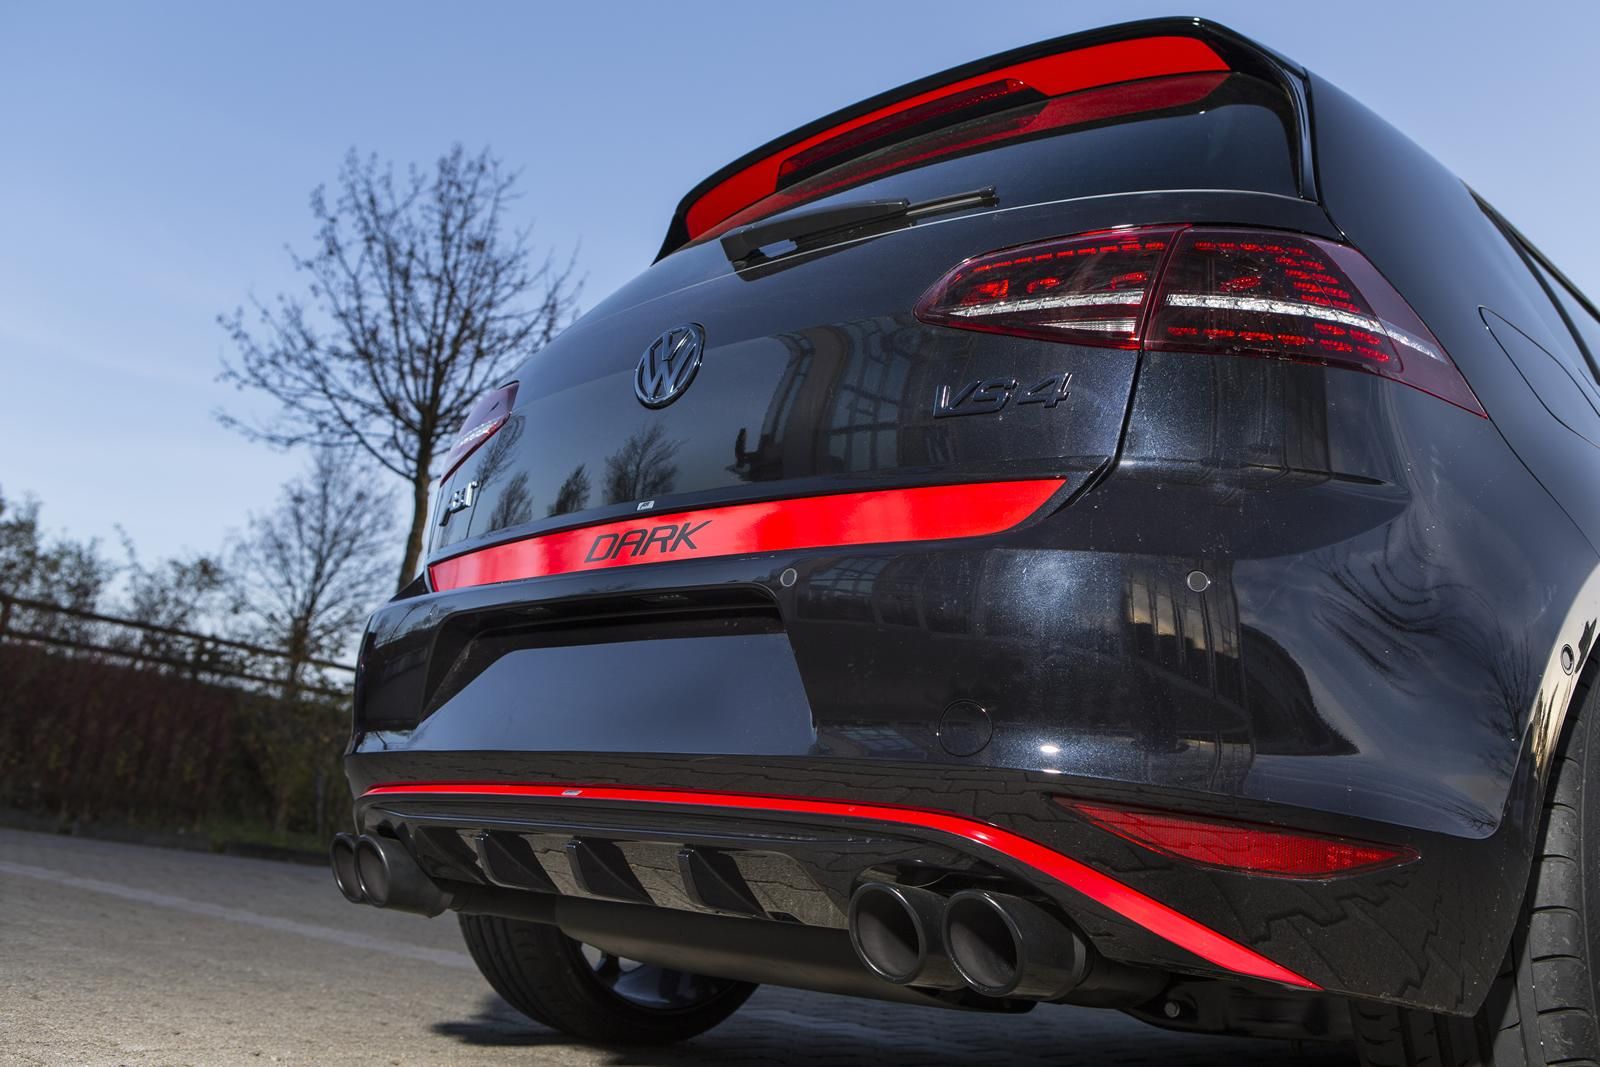 2013 Volkswagen Golf VII GTI Dark Edition by ABT Sportsline